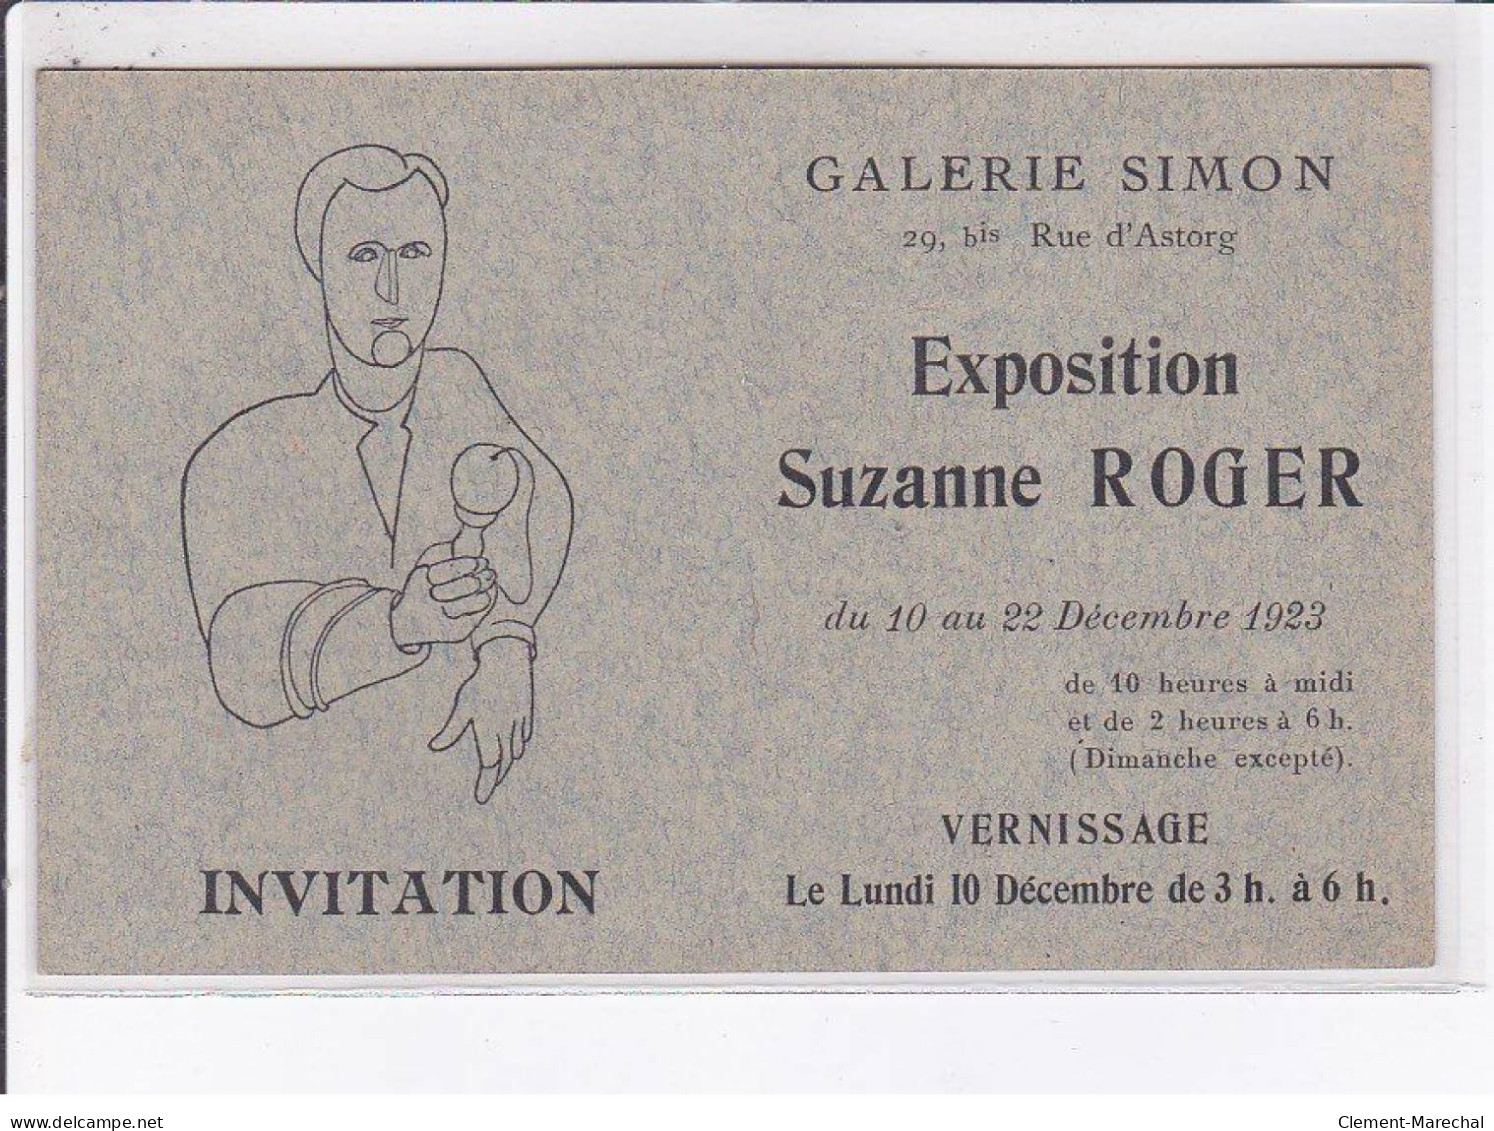 PUBLICITE: Invitation, Galerie Simon, Exposition Suzanne Roger, Vernissage - Très Bon état - Advertising